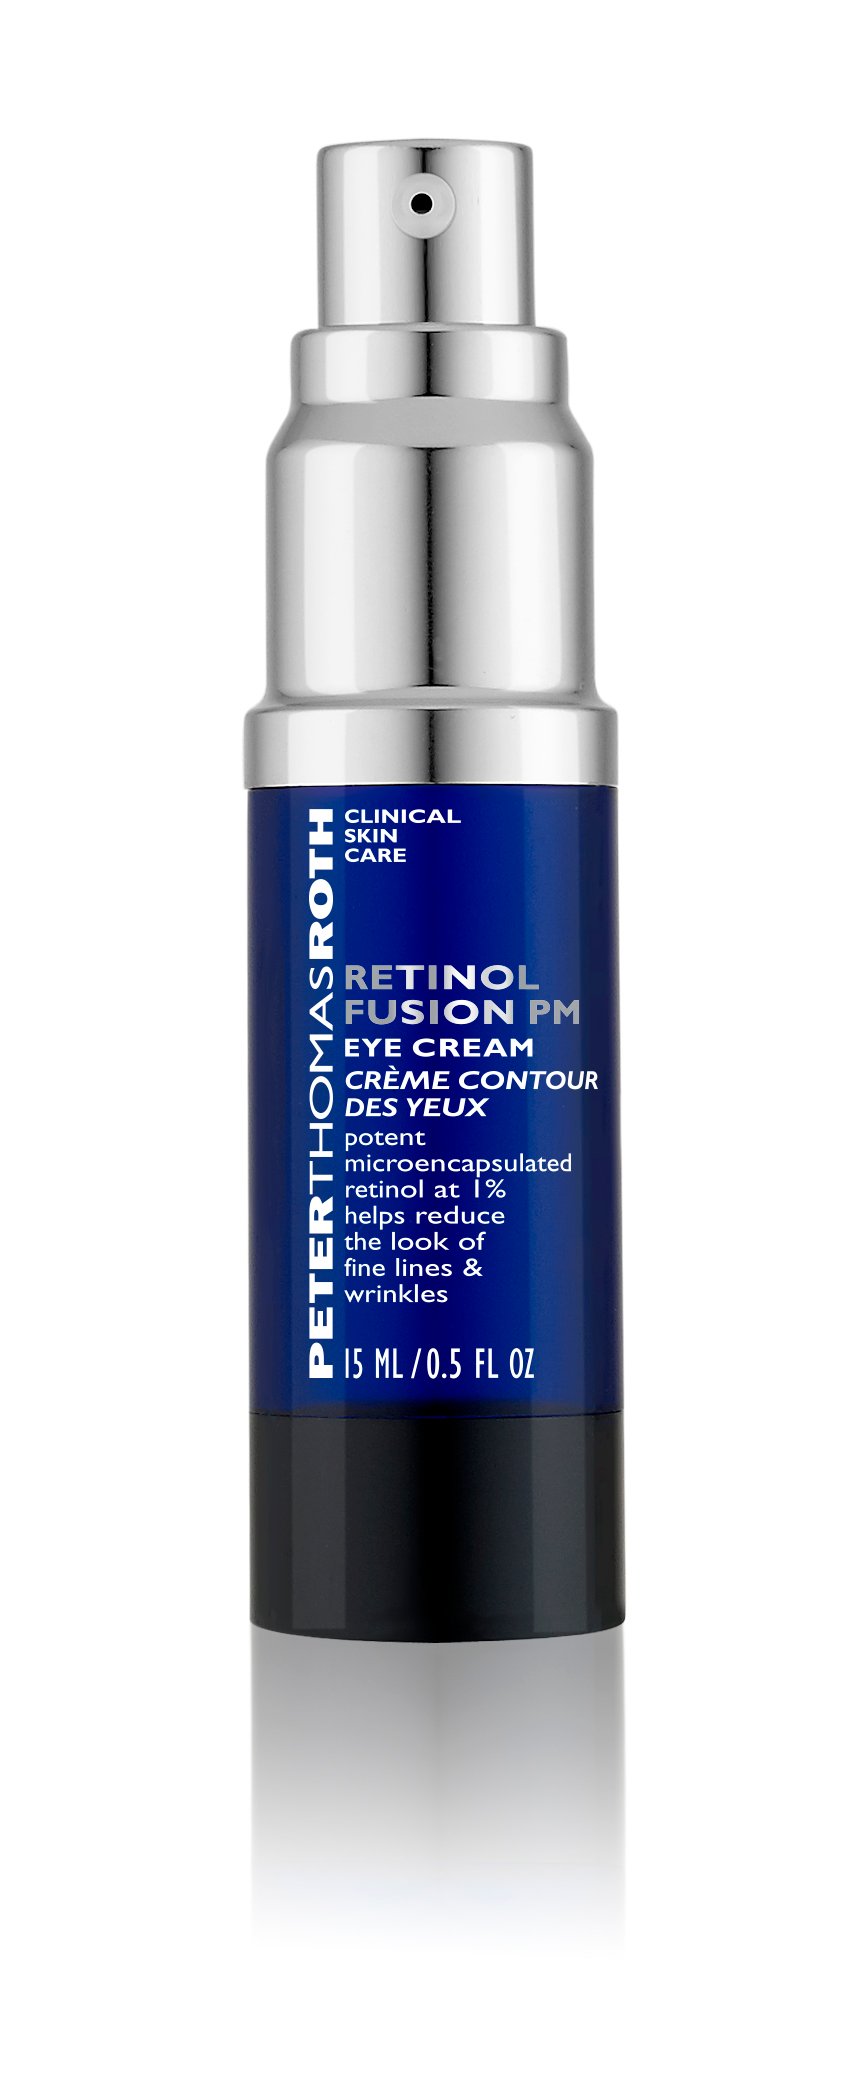 Peter Thomas Roth Retinol Fusion PM Eye Cream 15 ml